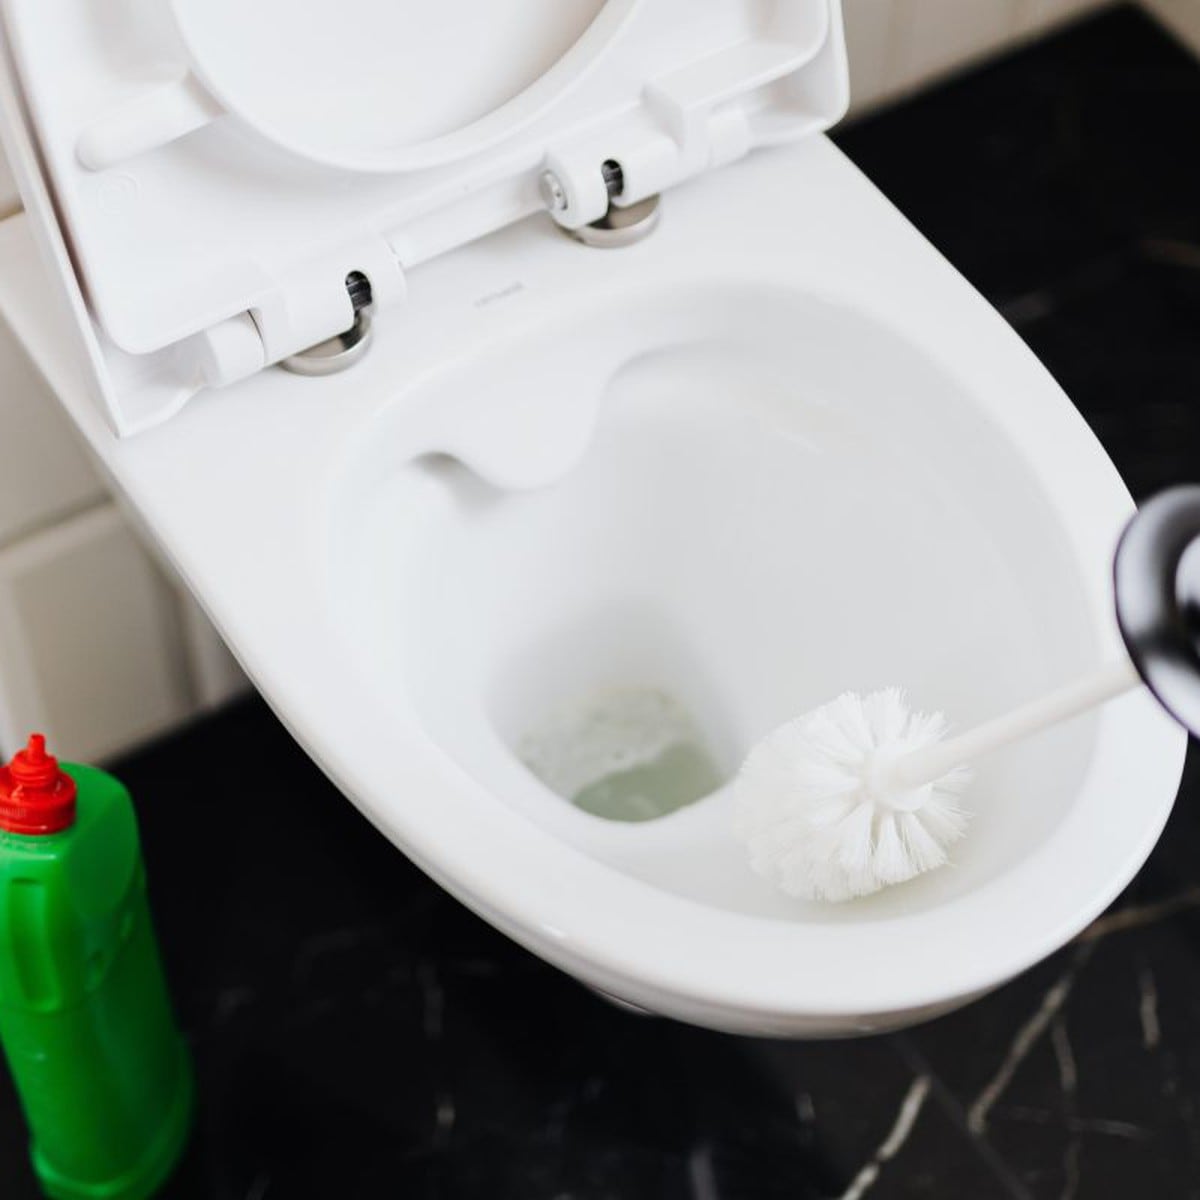 Cómo limpiar el sarro del WC: 5 métodos caseros que te sorprenderán